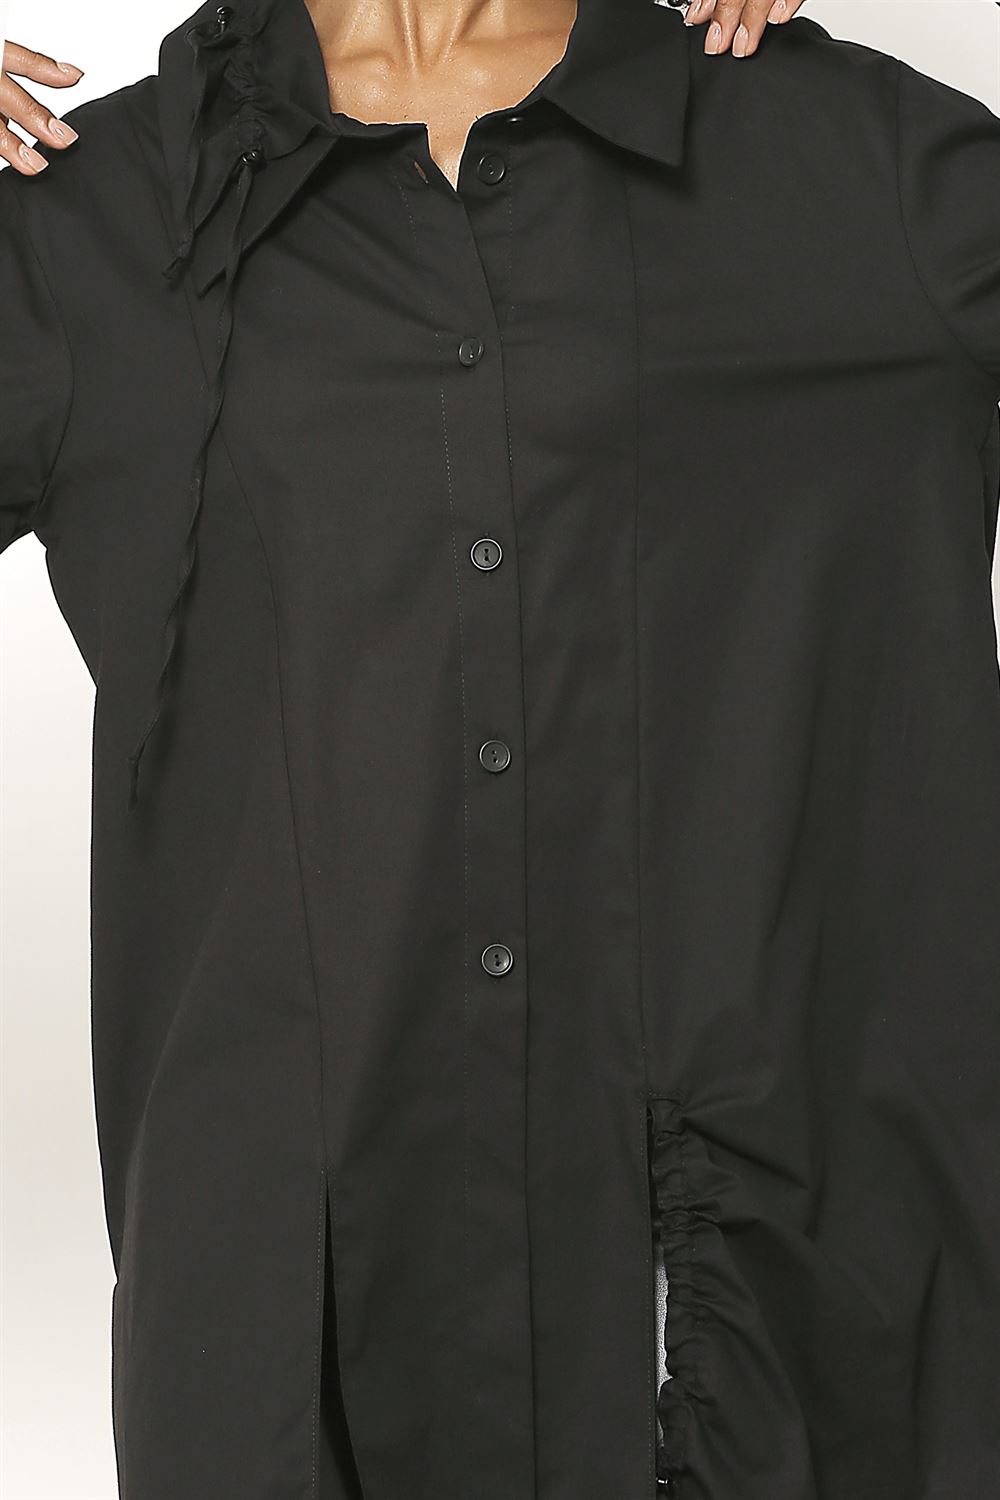 Etek Ucu Büzgülü Düğmeli Cotton Gömlek - Siyah